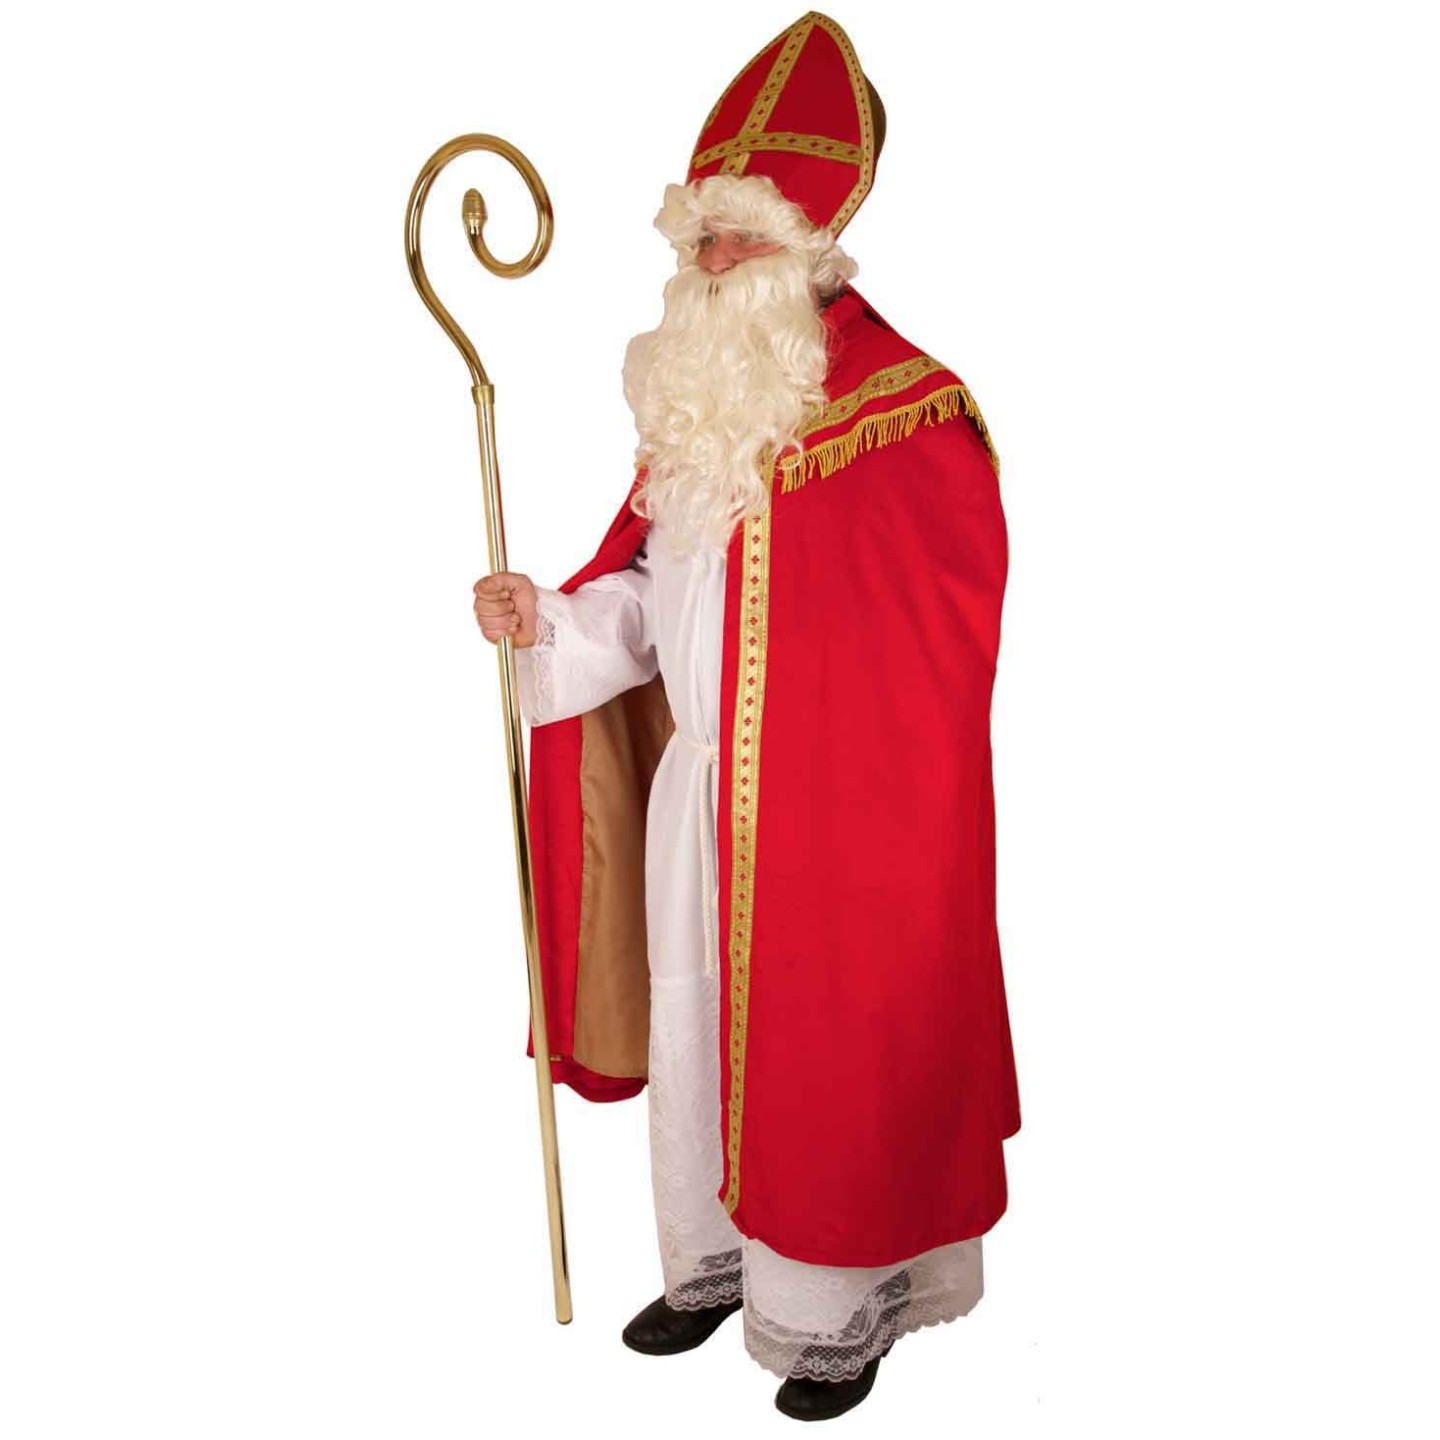 Brouwerij Wedstrijd Je zal beter worden Goedkoop Sinterklaas kostuum - Sinterklaaspak kopen ? | Jokershop.be